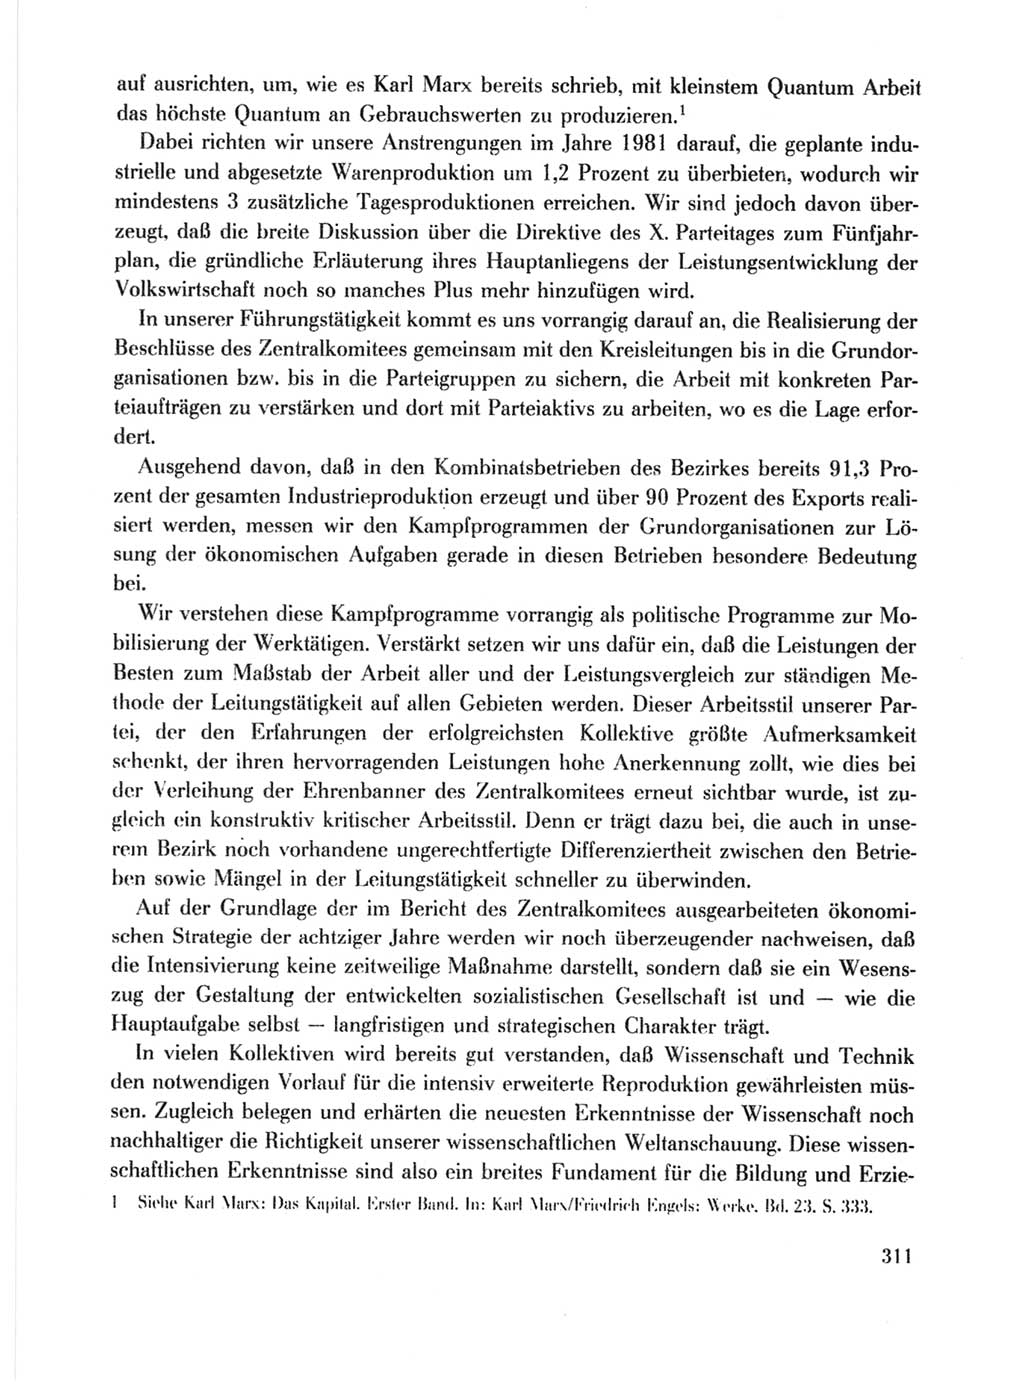 Protokoll der Verhandlungen des Ⅹ. Parteitages der Sozialistischen Einheitspartei Deutschlands (SED) [Deutsche Demokratische Republik (DDR)] 1981, Band 1, Seite 311 (Prot. Verh. Ⅹ. PT SED DDR 1981, Bd. 1, S. 311)